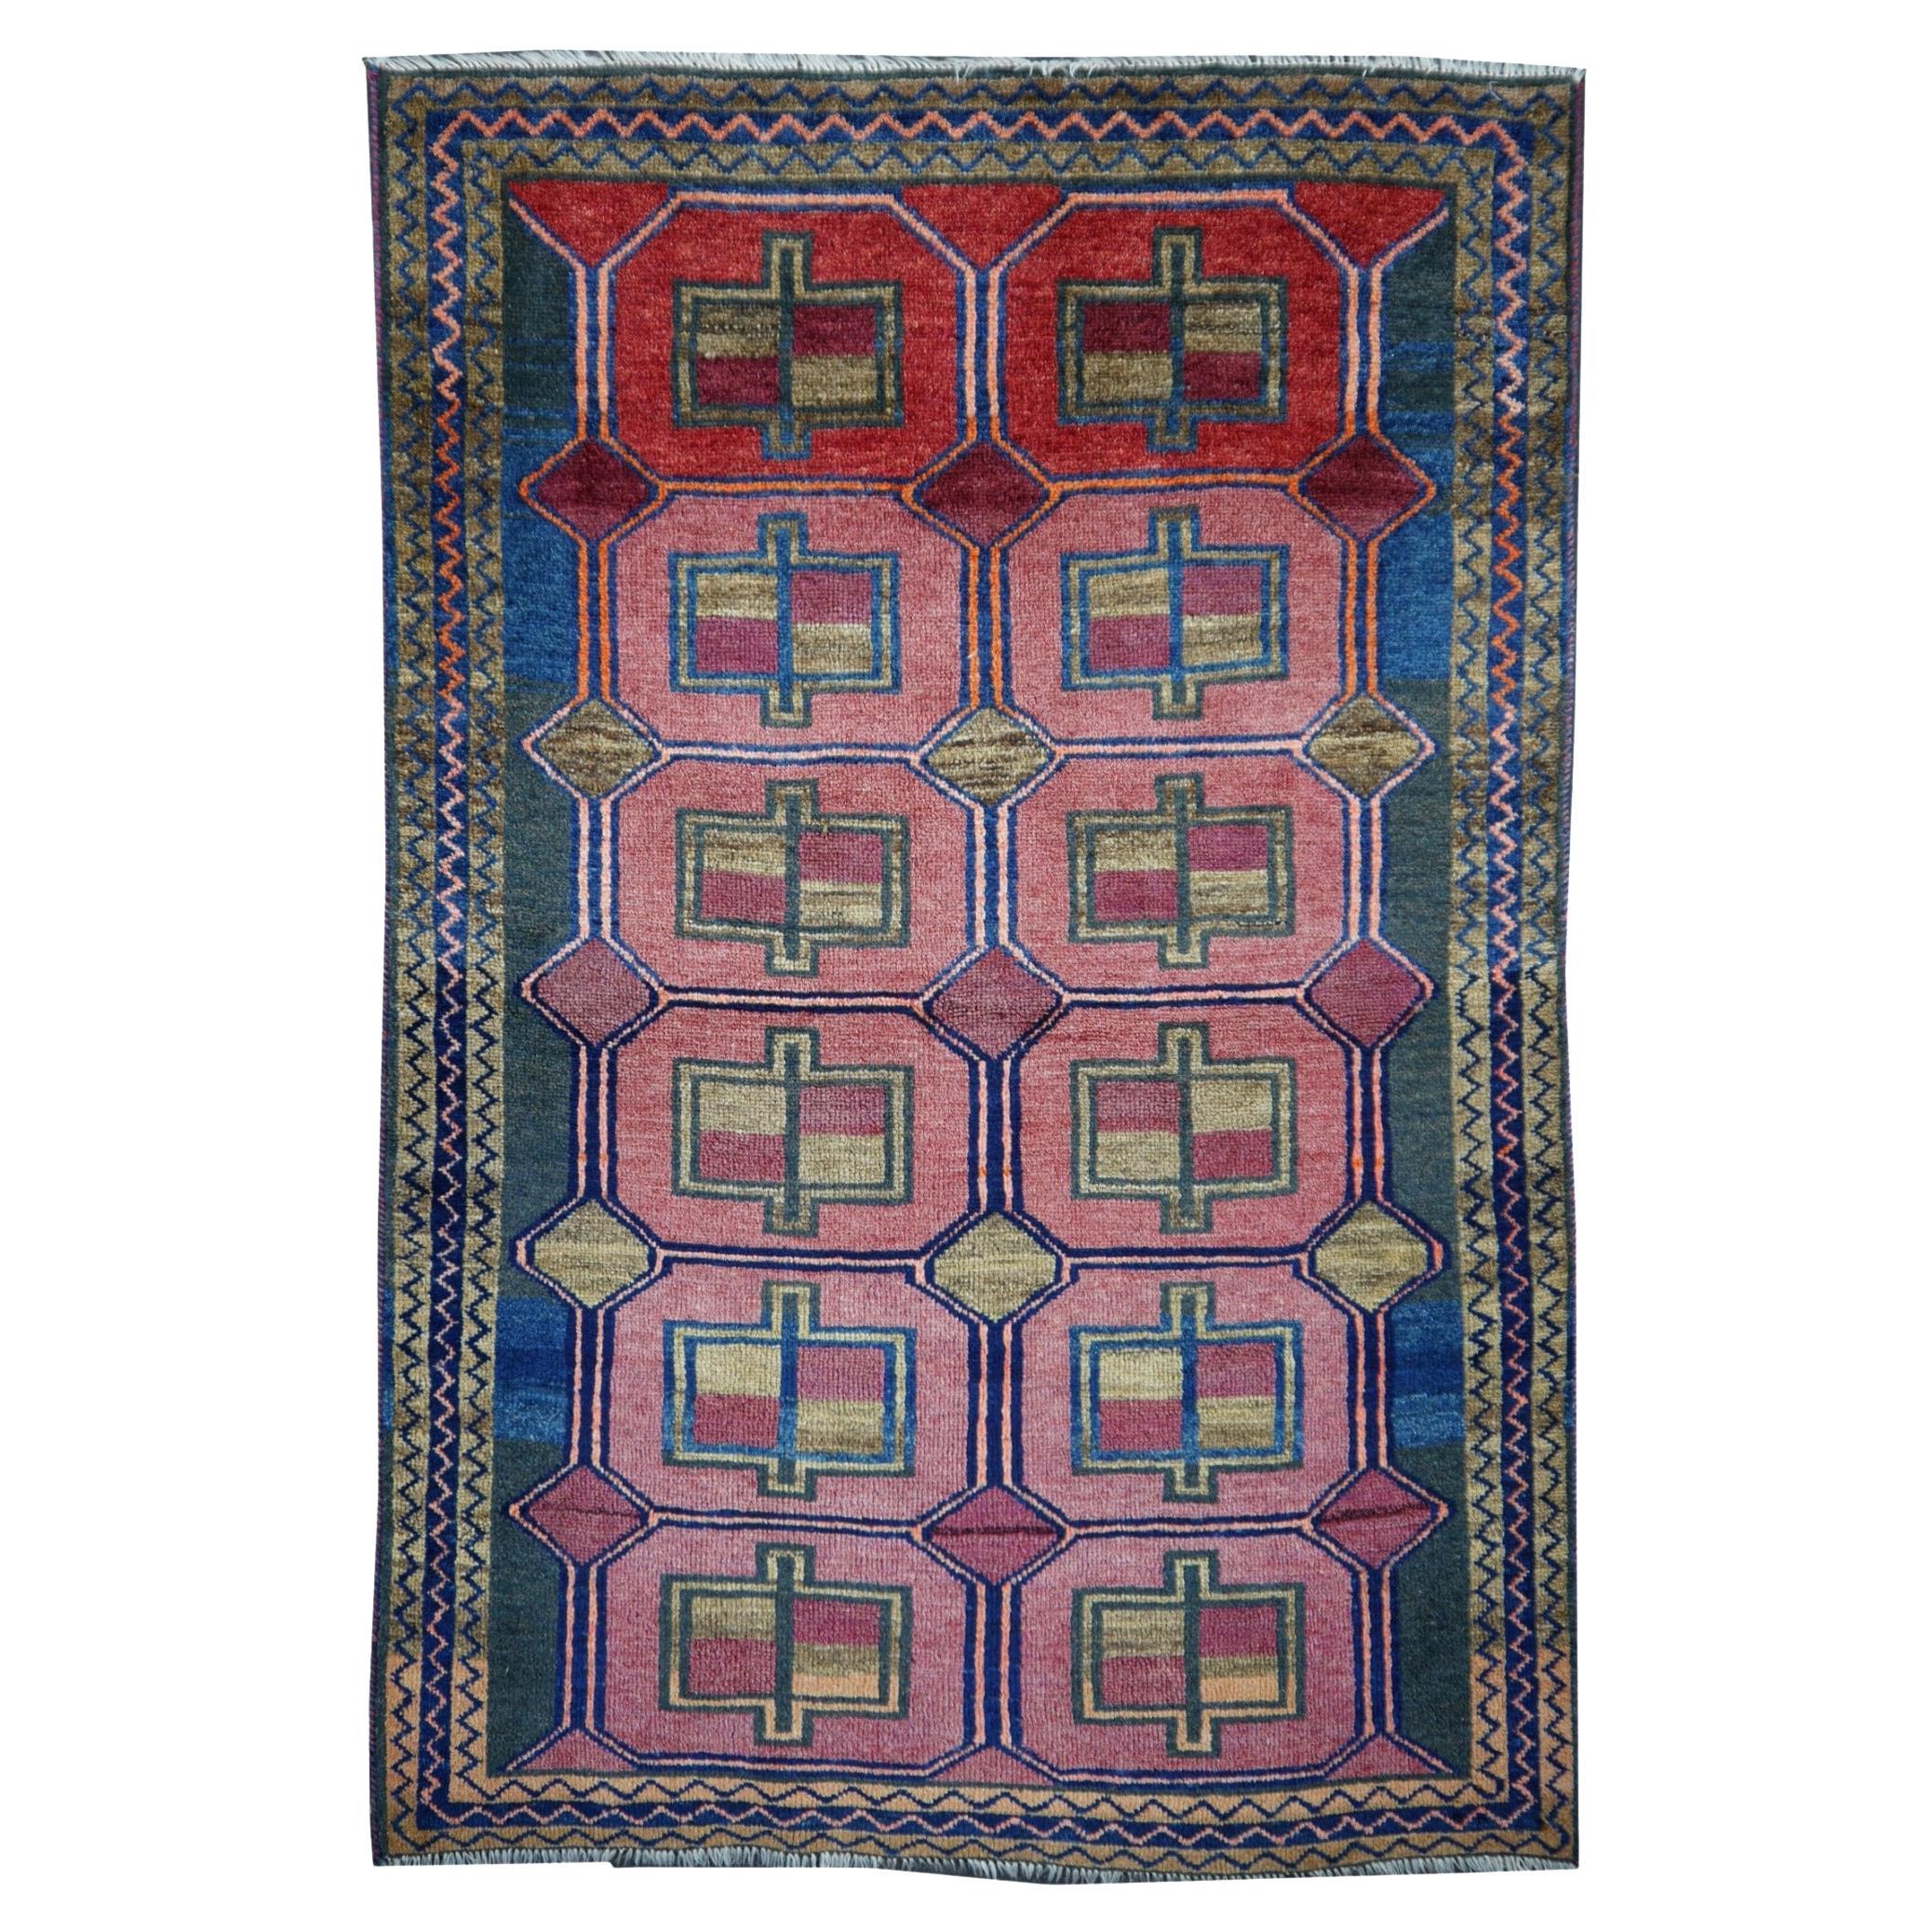 Vintage Rug Kurdish Turkish Hand-Knotted Tribal Carpet Blue, Violet, Red, Green